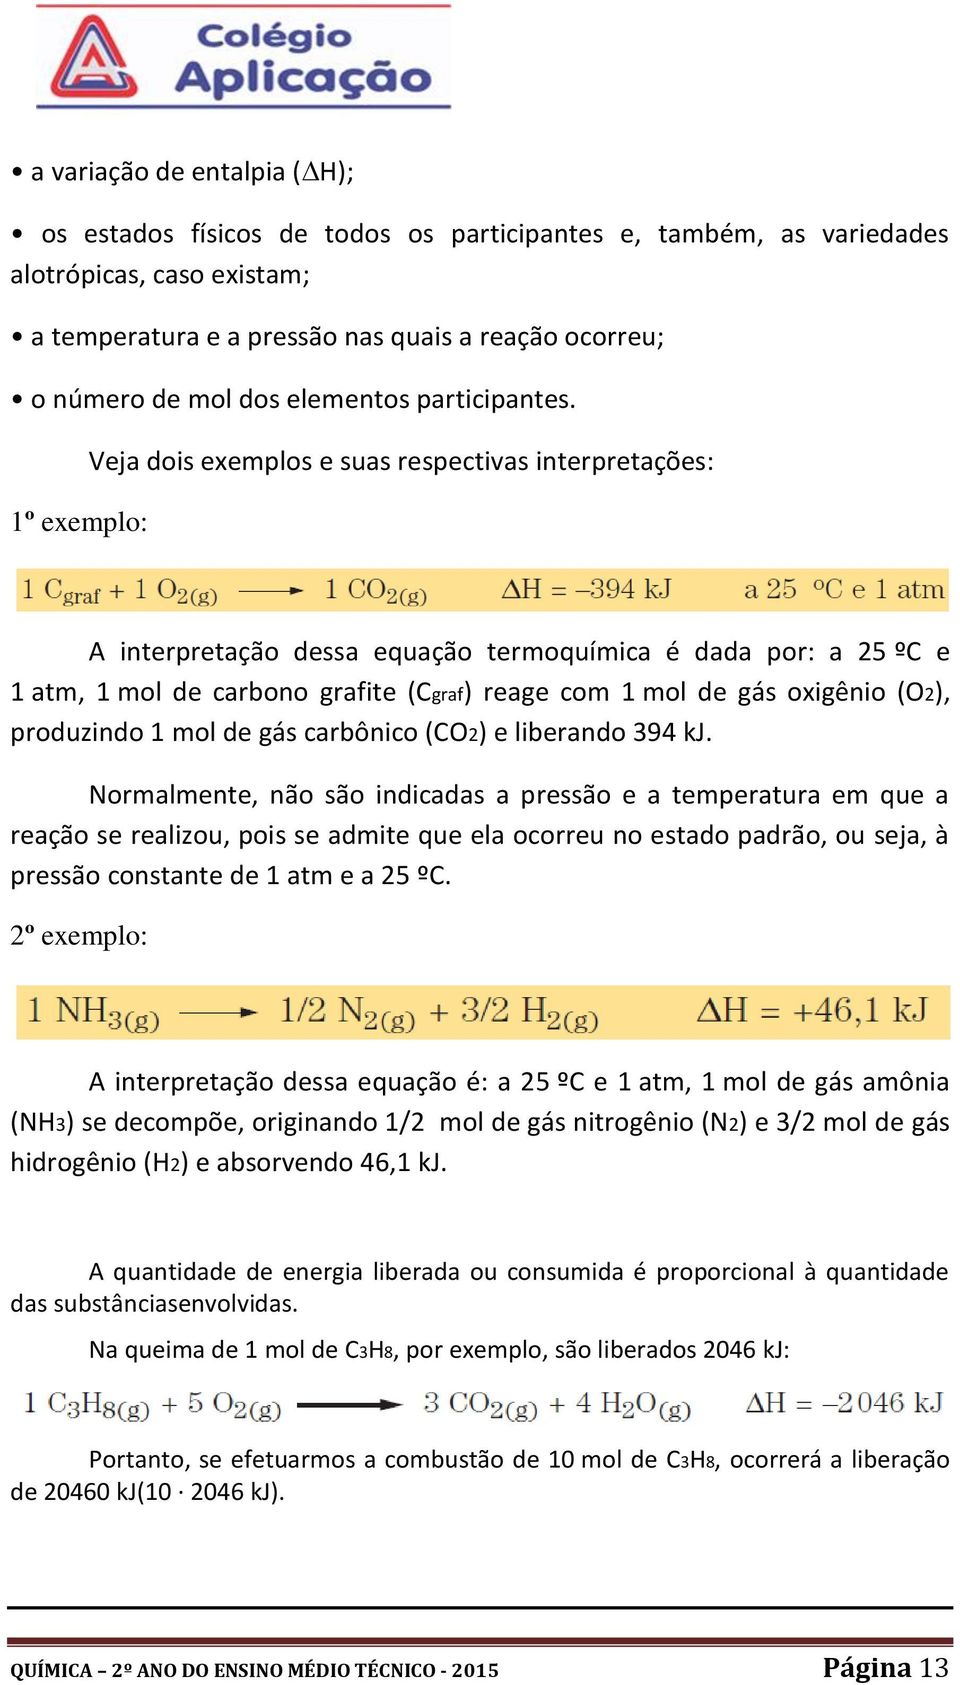 1º exemplo: Veja dois exemplos e suas respectivas interpretações: A interpretação dessa equação termoquímica é dada por: a 25 ºC e 1 atm, 1 mol de carbono grafite (Cgraf) reage com 1 mol de gás